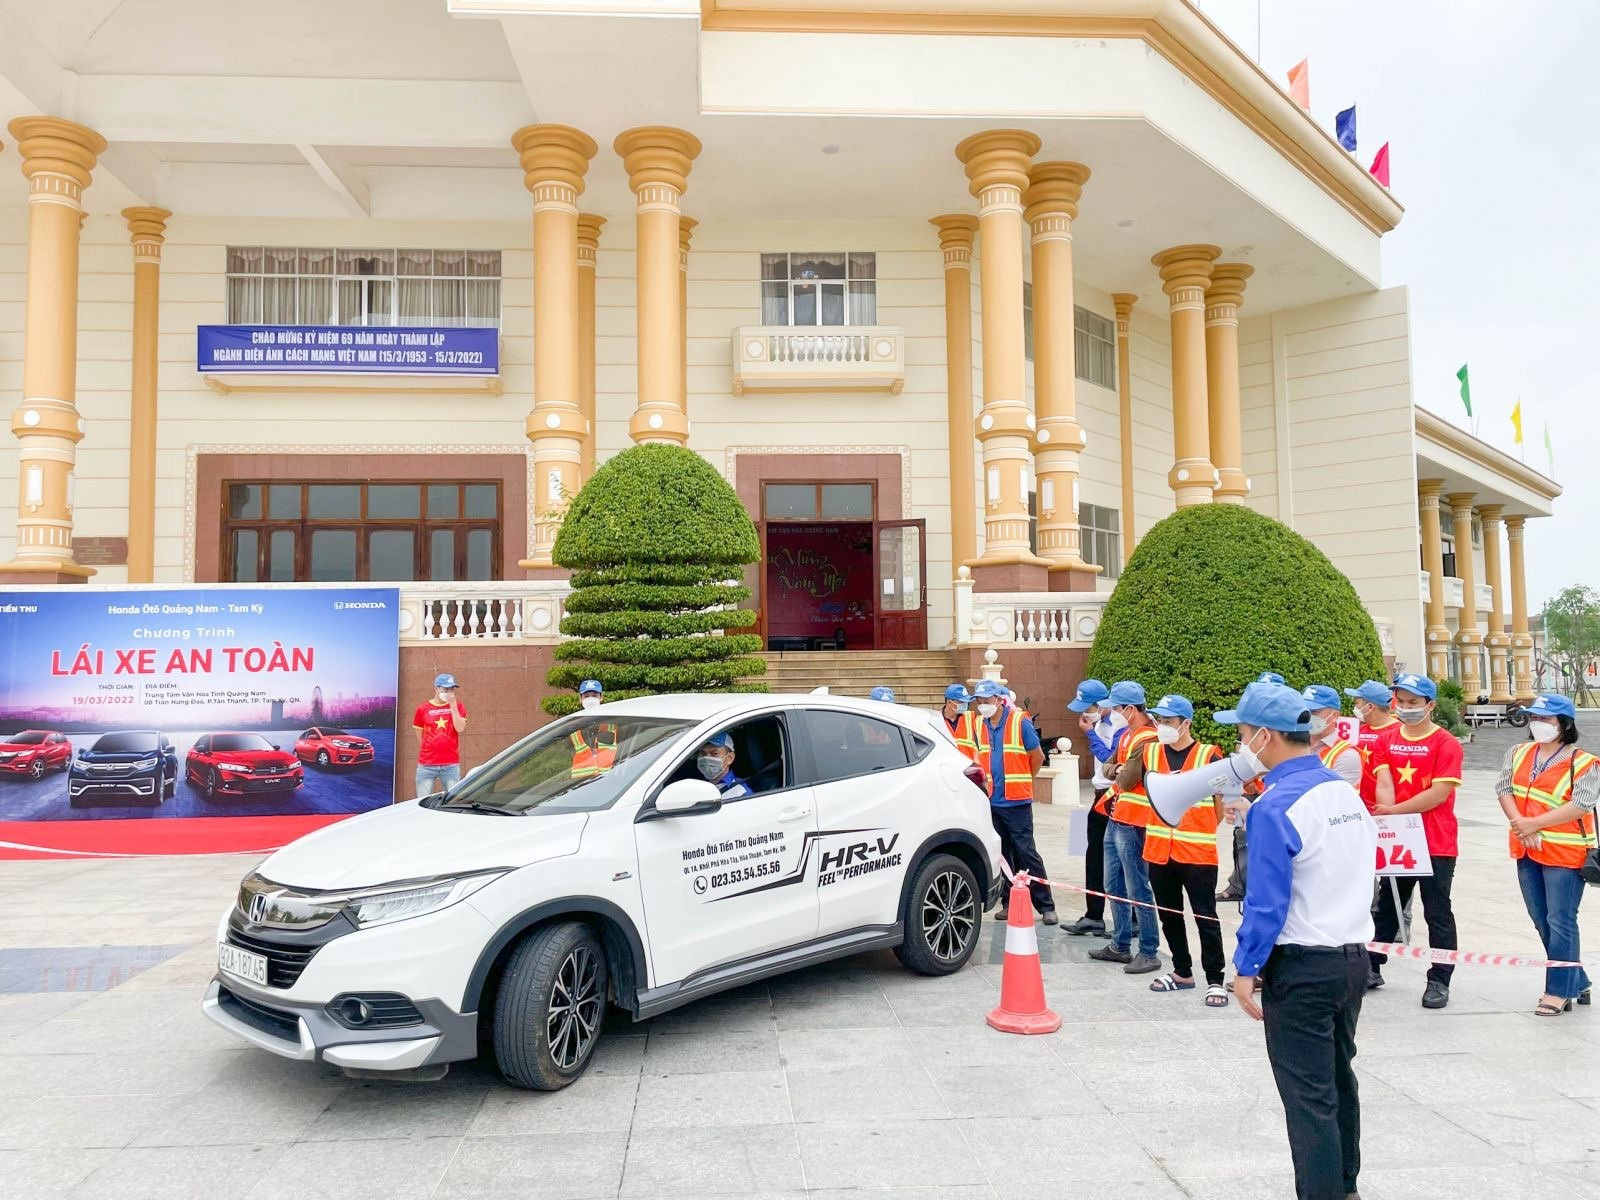 Honda Ôtô Quảng Nam - Tam Kỳ tổ chức thành công chương trình lái xe an toàn. Ảnh: HONDA